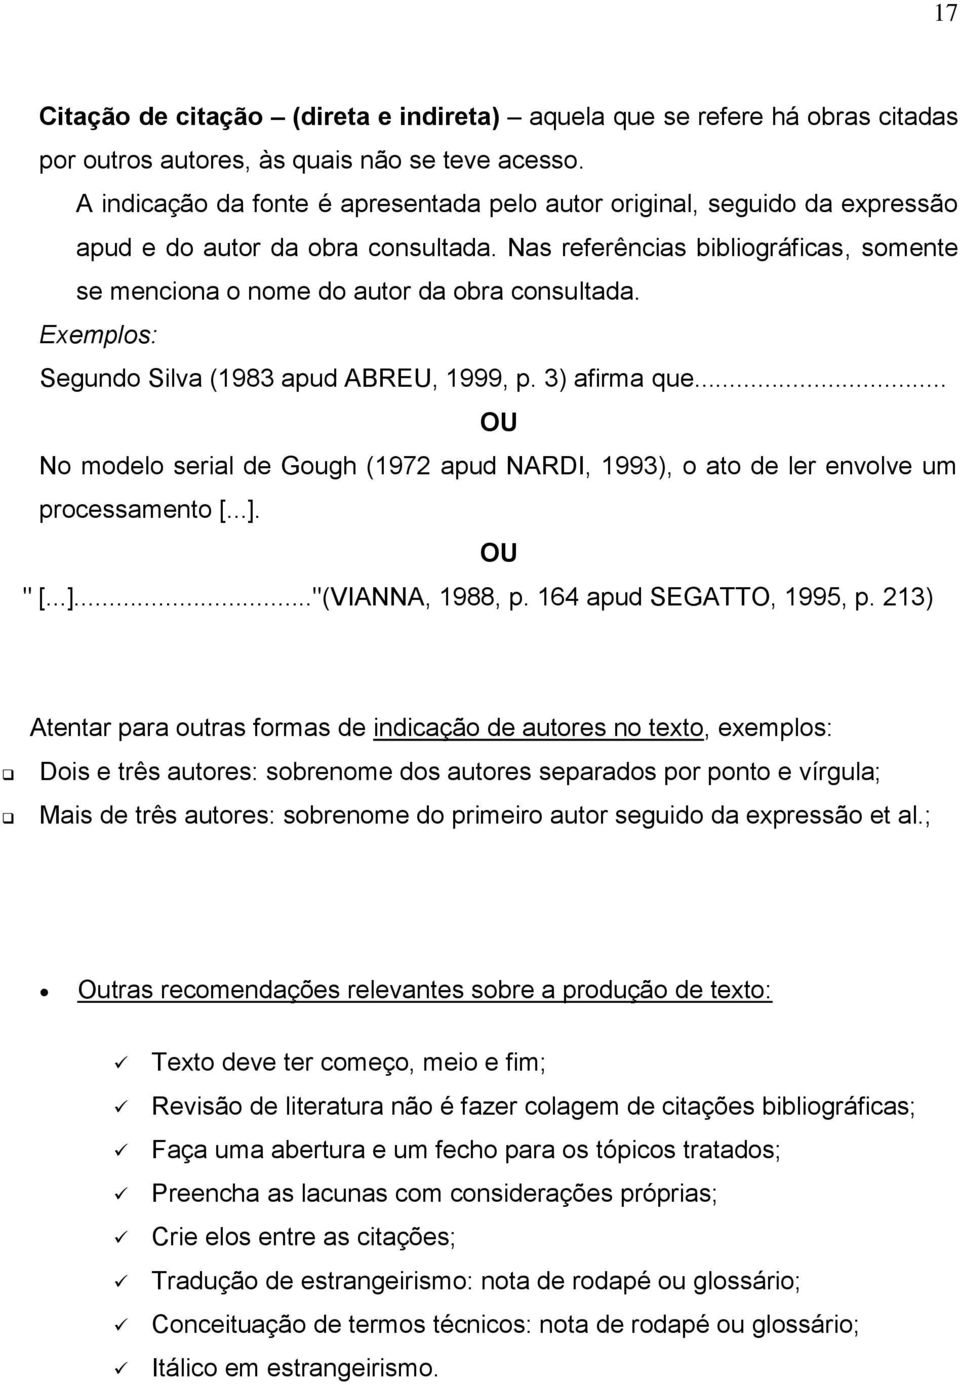 Exemplos: Segundo Silva (1983 apud ABREU, 1999, p. 3) afirma que... OU No modelo serial de Gough (1972 apud NARDI, 1993), o ato de ler envolve um processamento [...]. OU " [...]..."(VIANNA, 1988, p.